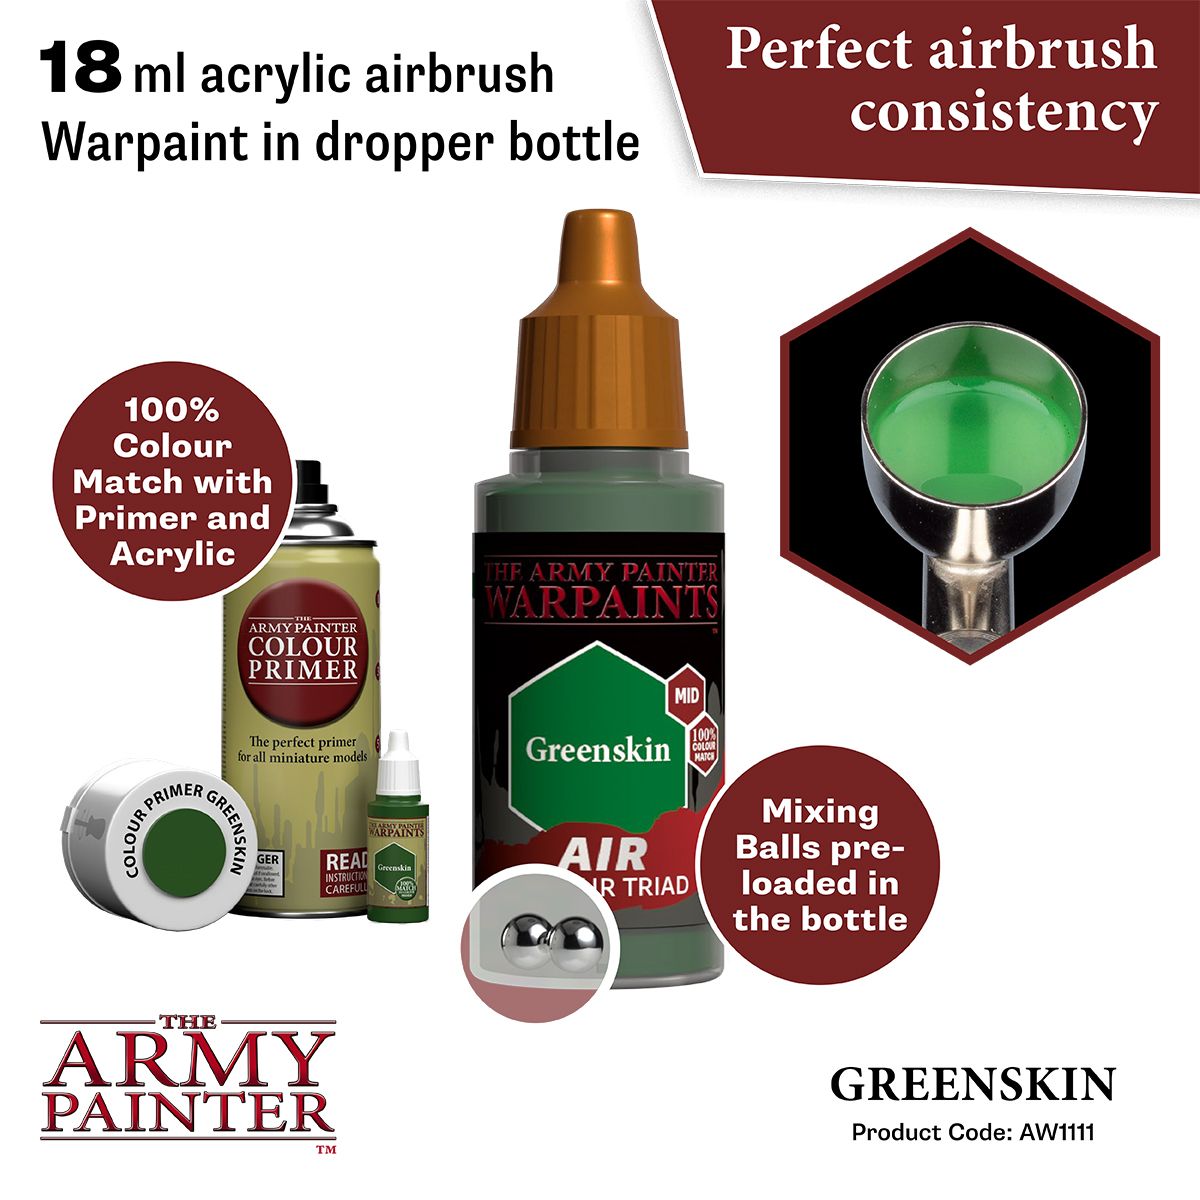 Air Greenskin